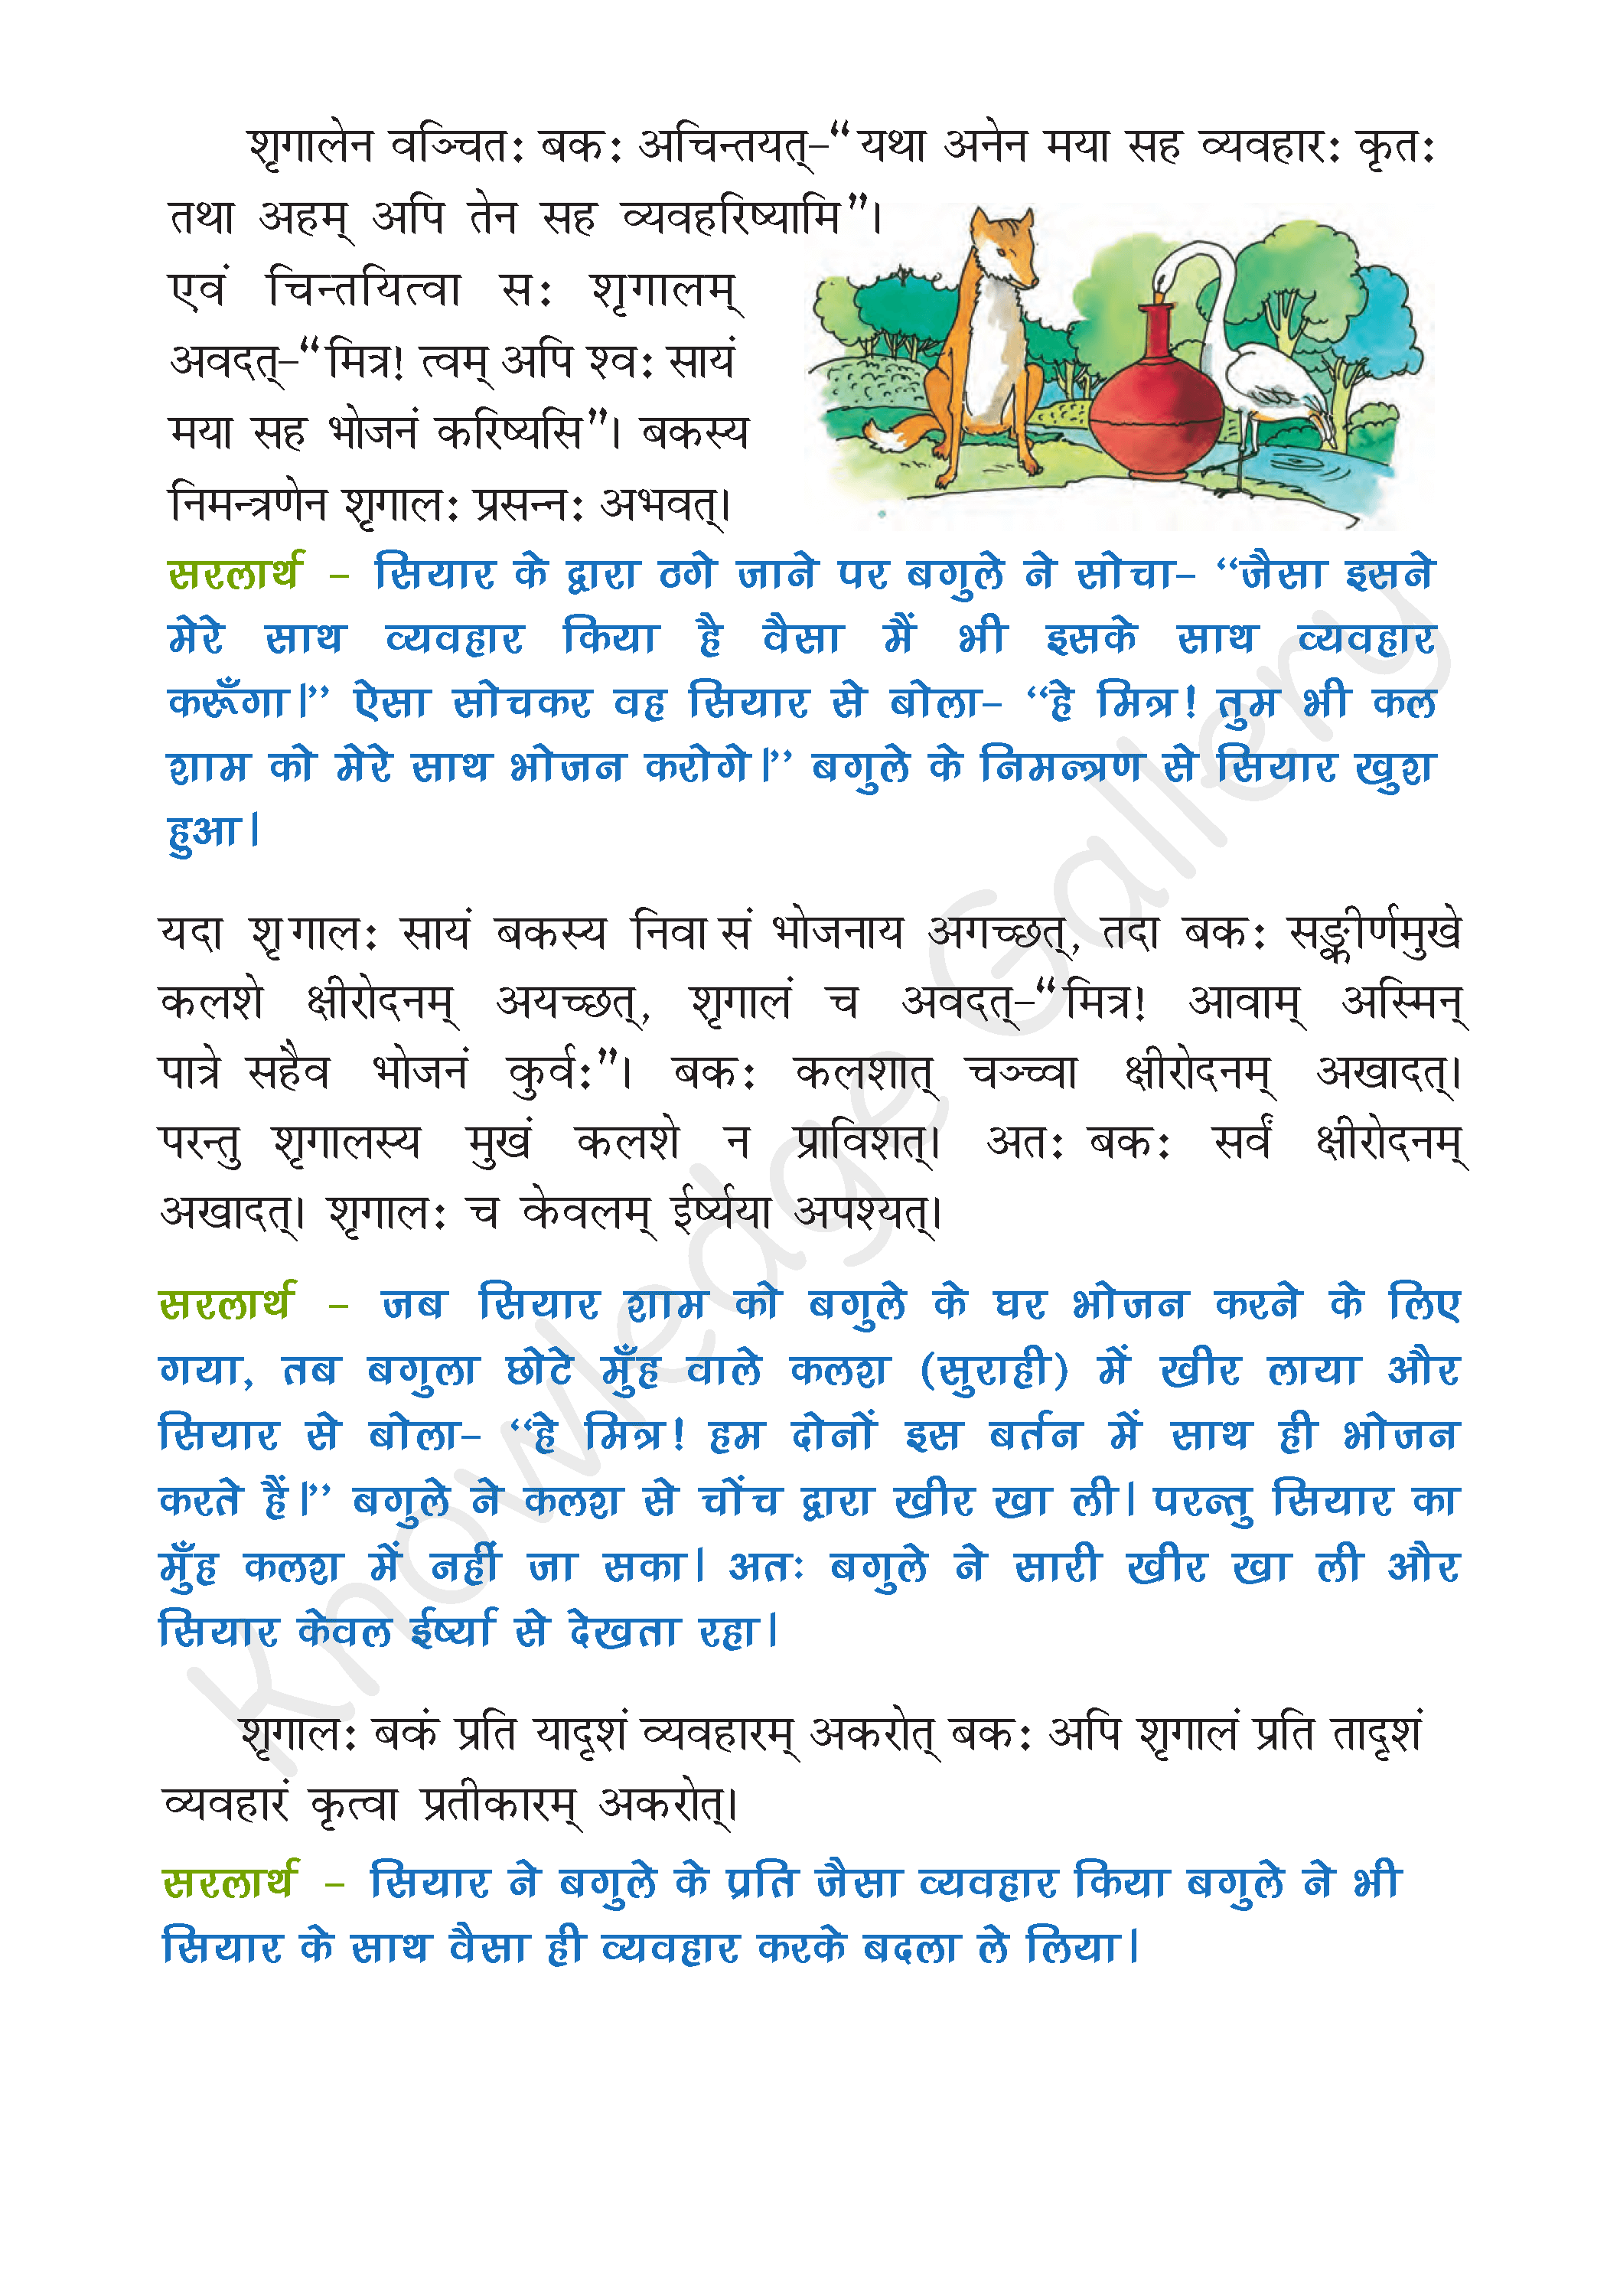 NCERT Solution For Class 6 Sanskrit Chapter 7 part 2